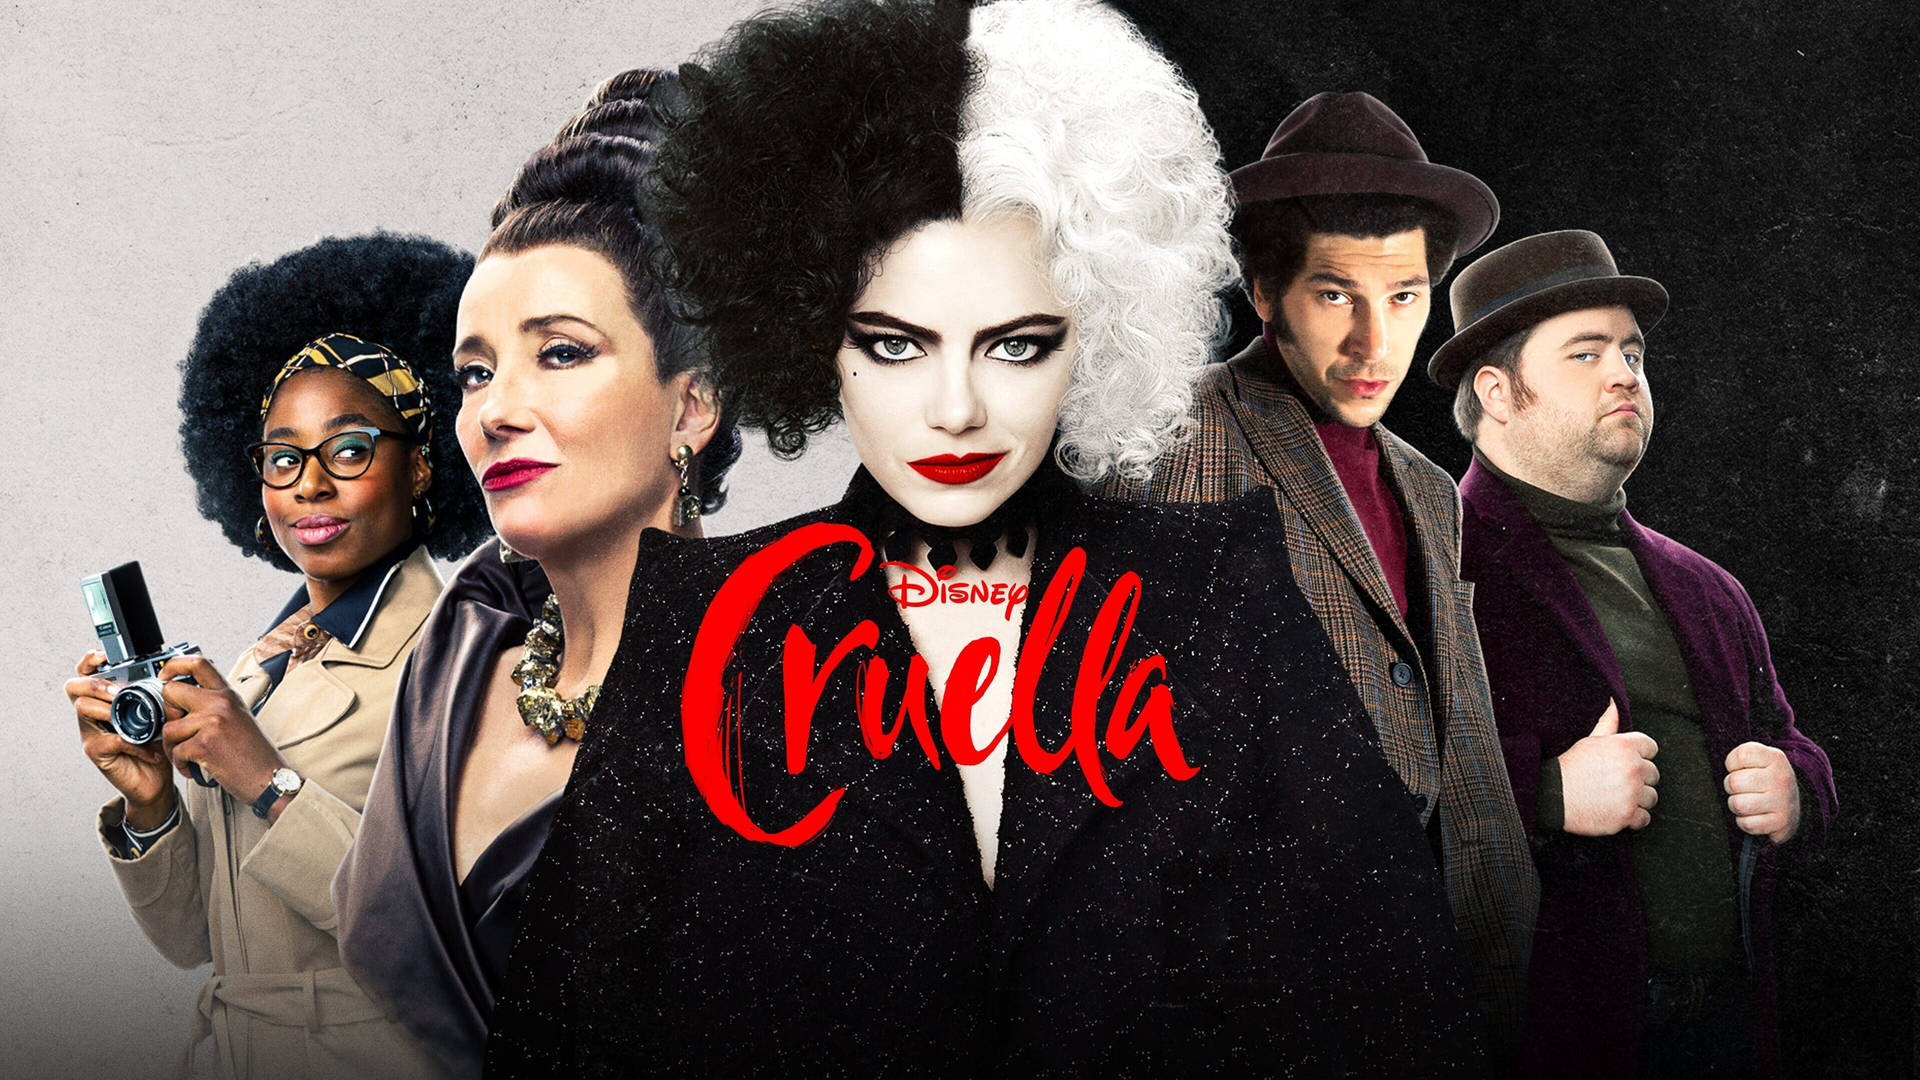 Cruella Pictures Wallpaper